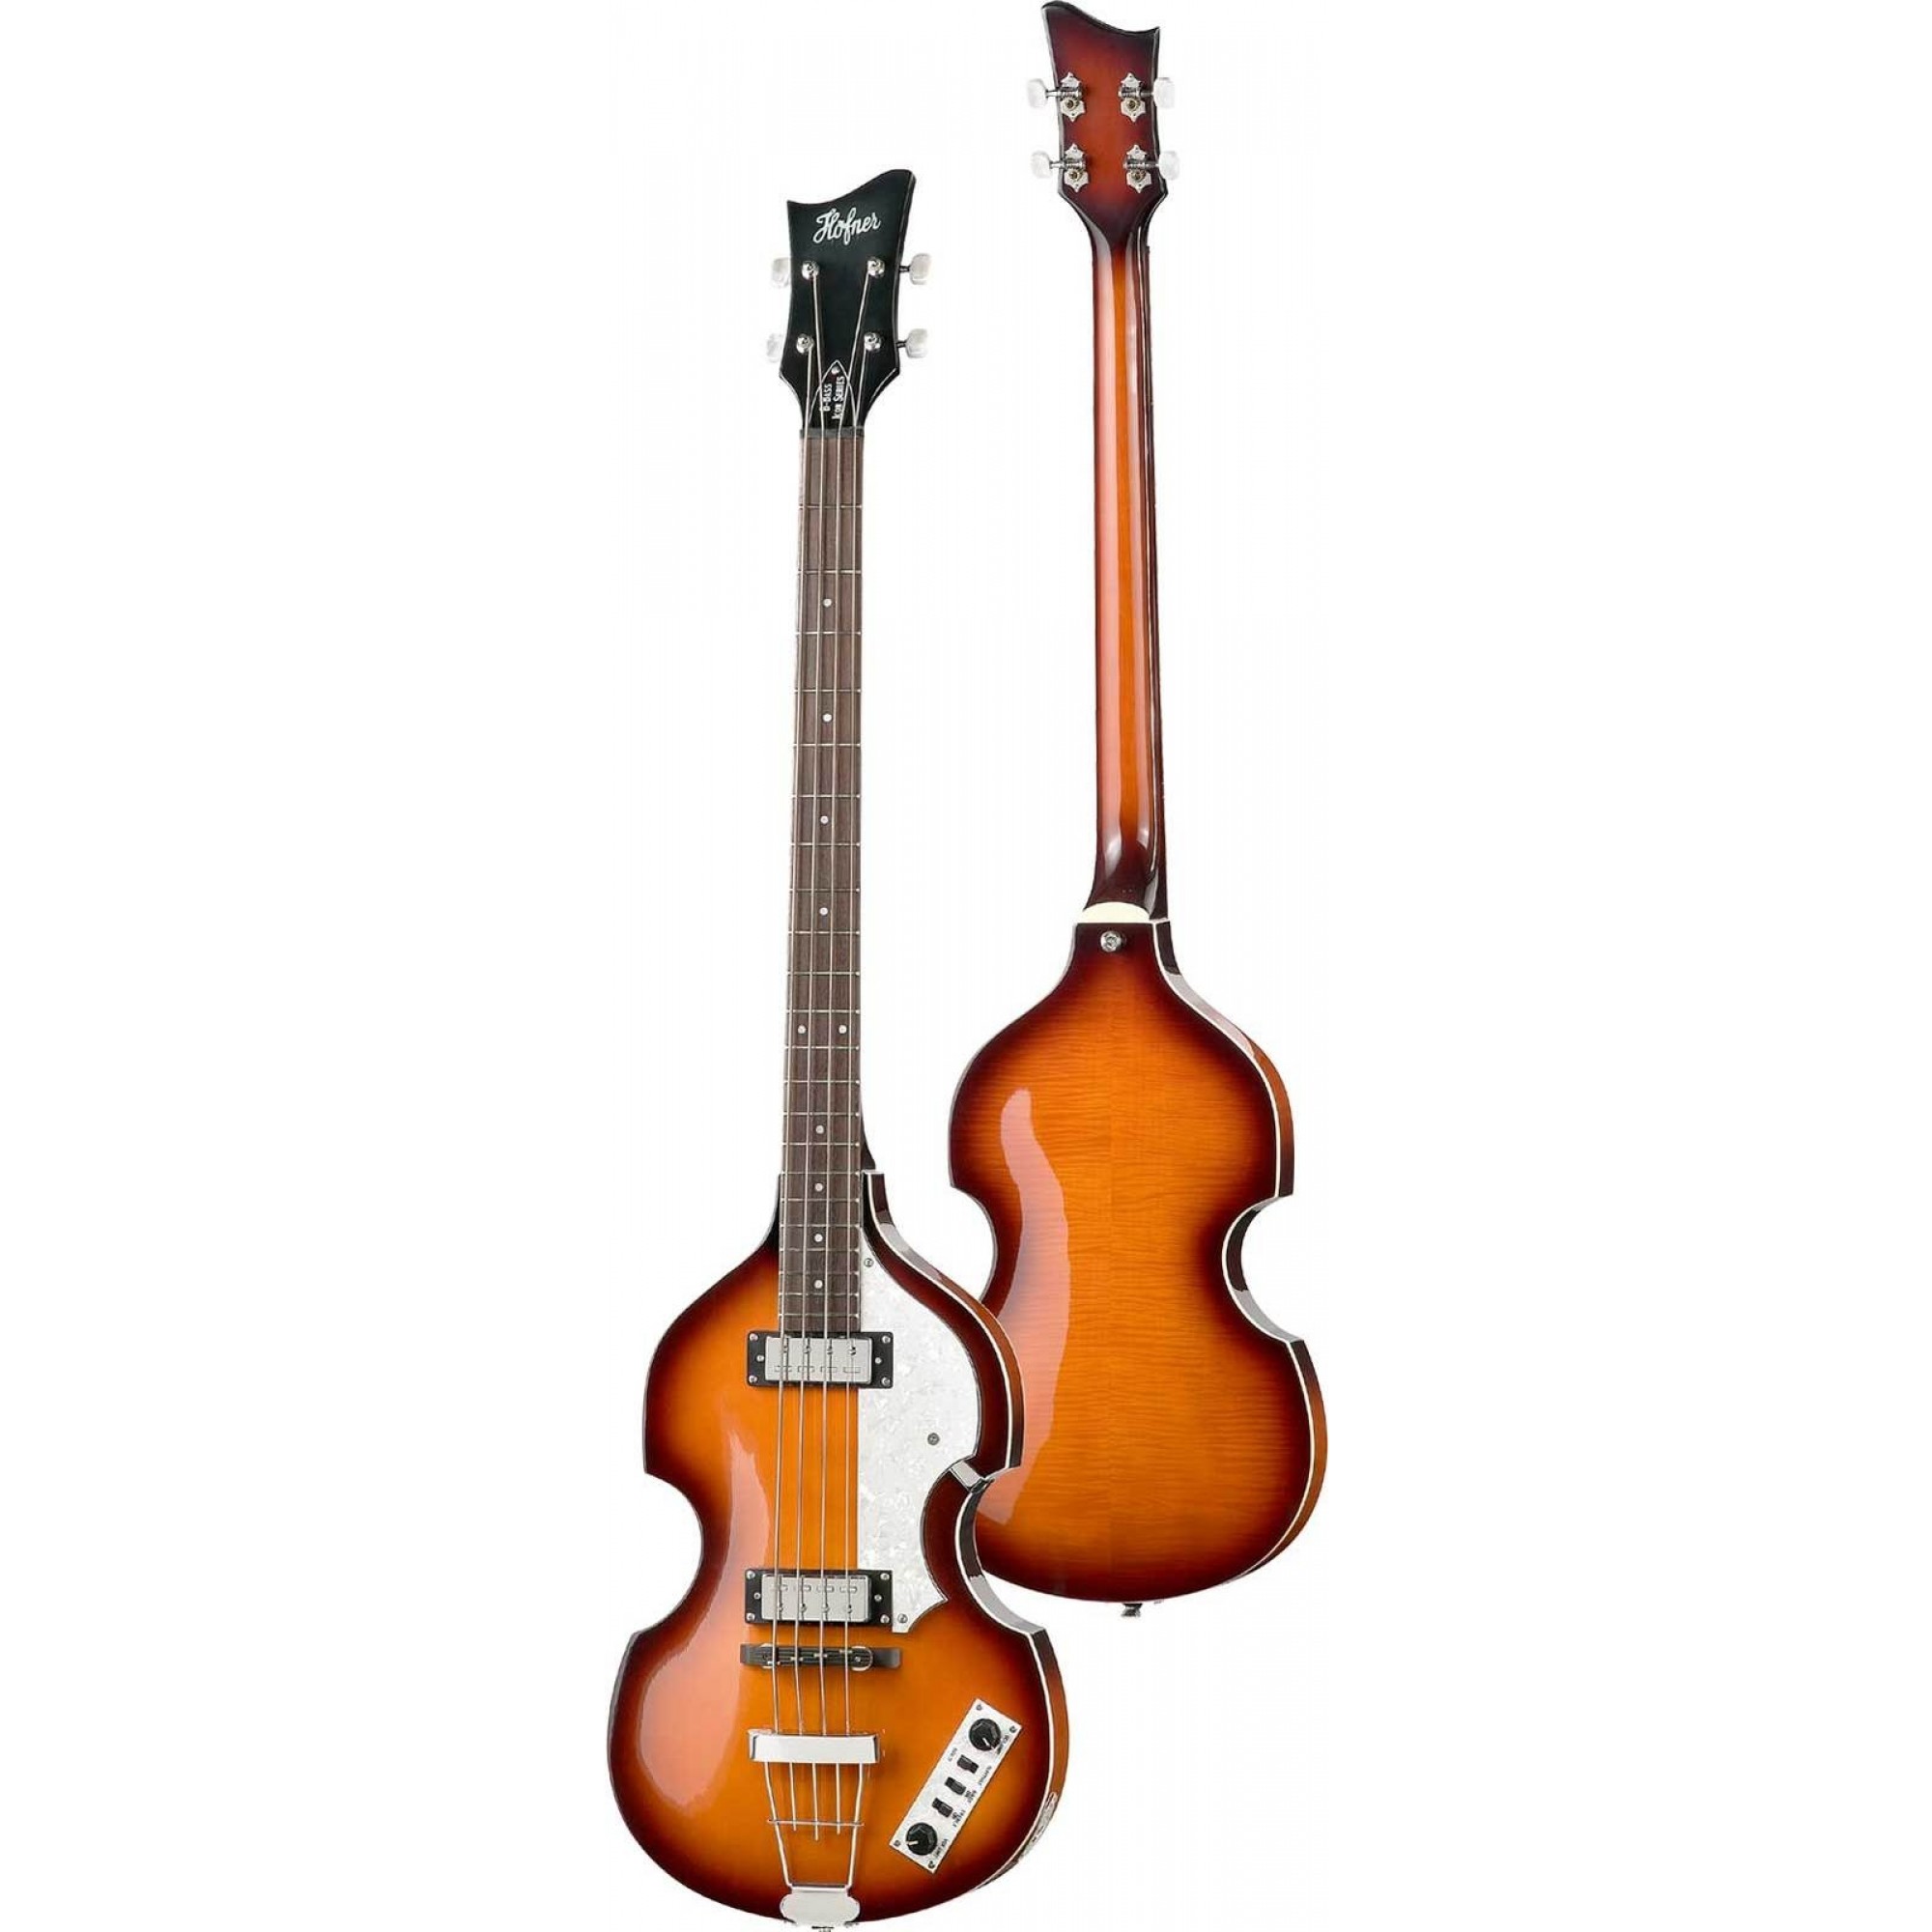 Hofner Violin Bass. Hofner 459 VTZ Violin Guitar. Бас гитара скрипка. Бас скрипка Орфей. Violin bass